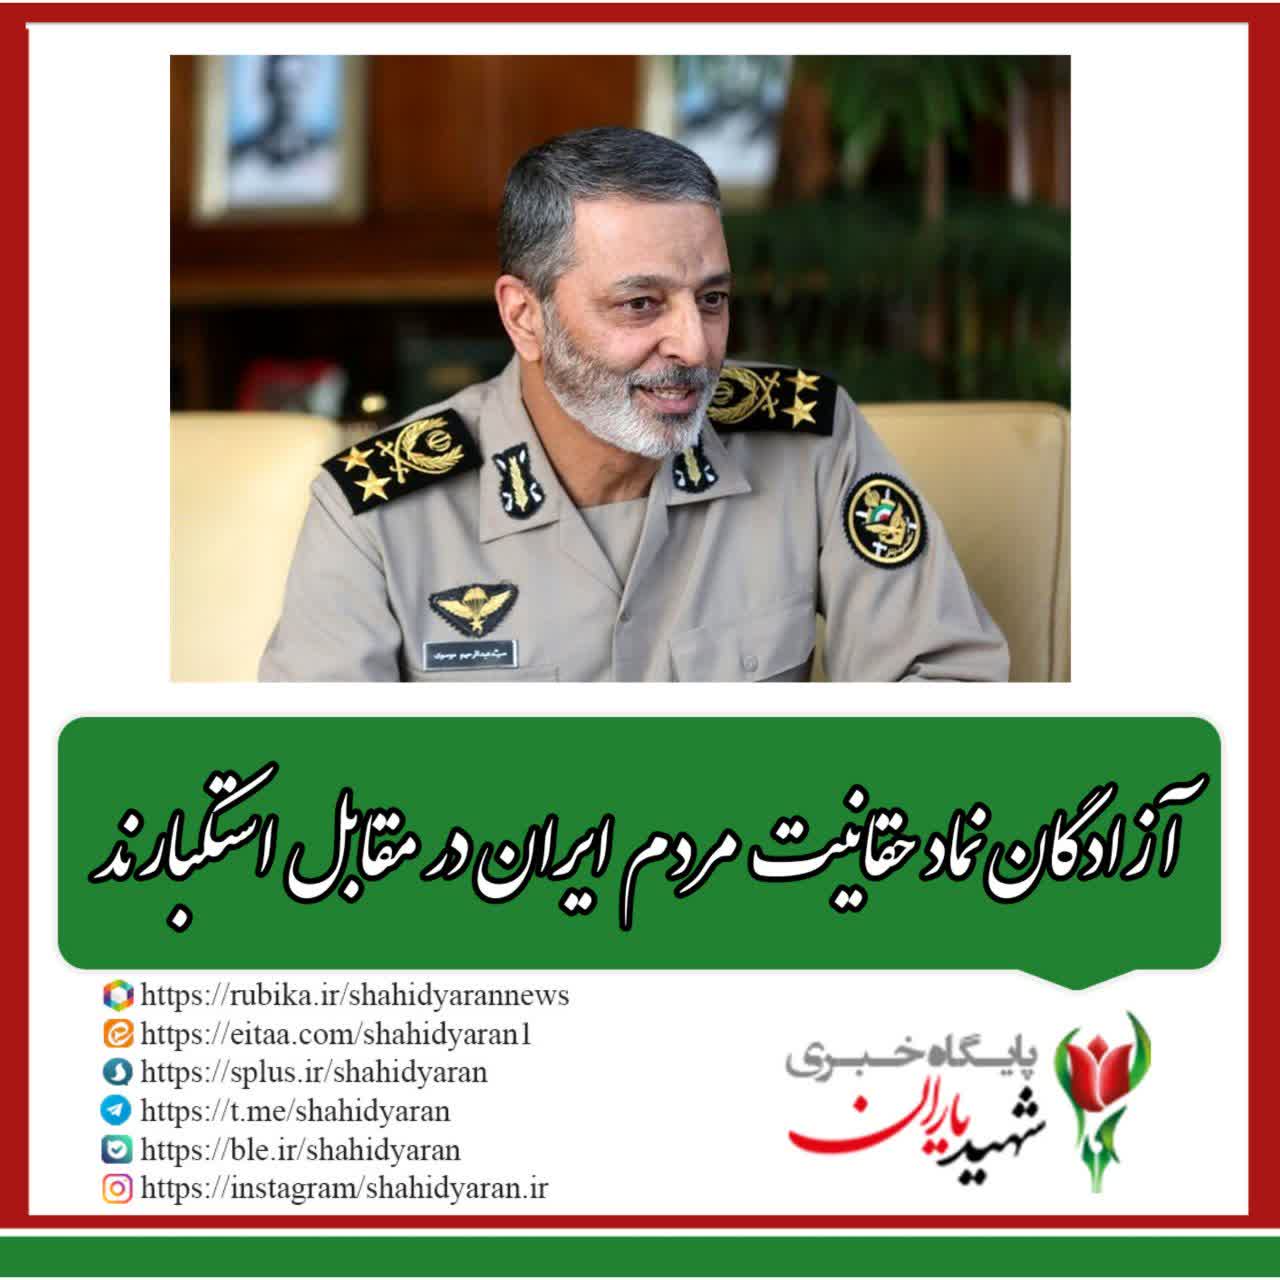 فرمانده کل ارتش: آزادگان نماد حقانیت مردم ایران در مقابل استکبارند